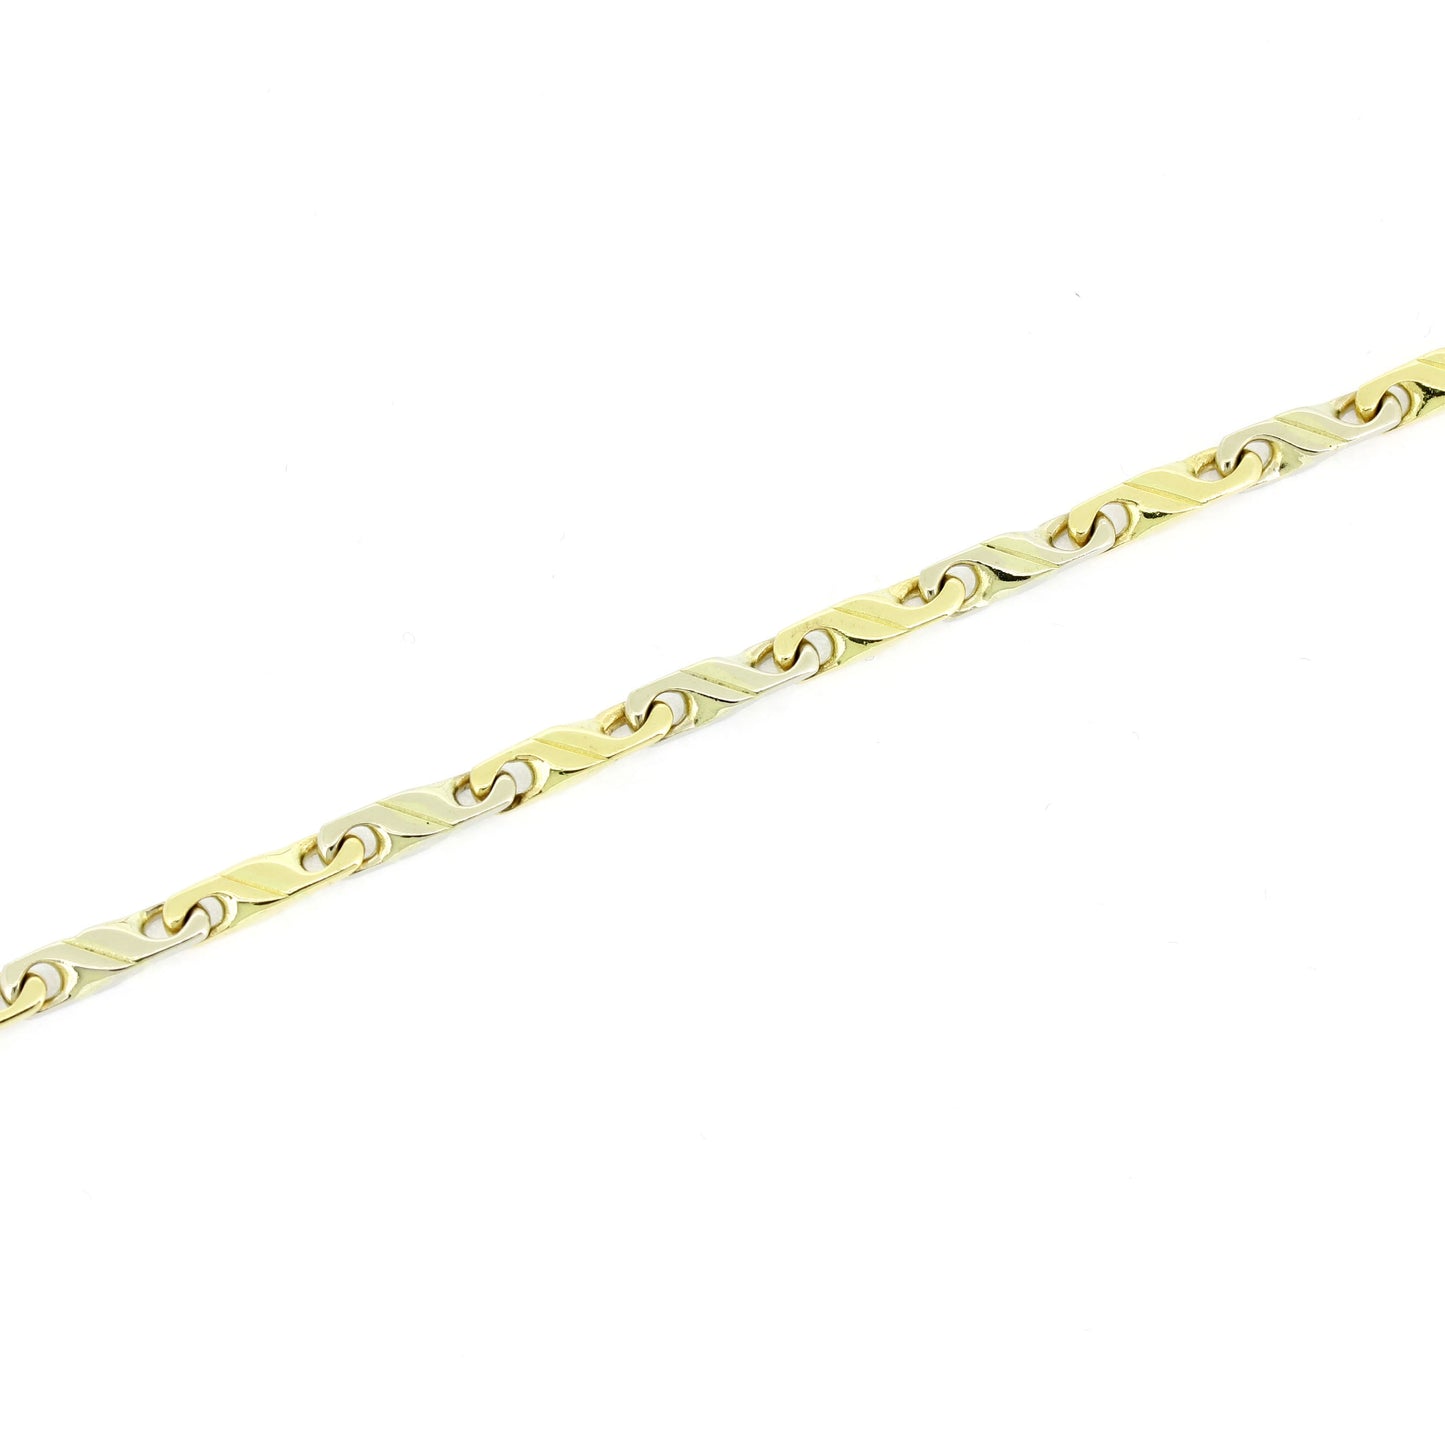 Halskette 585 Gelbgold & Weißgold 14 kt  Kettenlänge 52 cm - Wert 2750,-